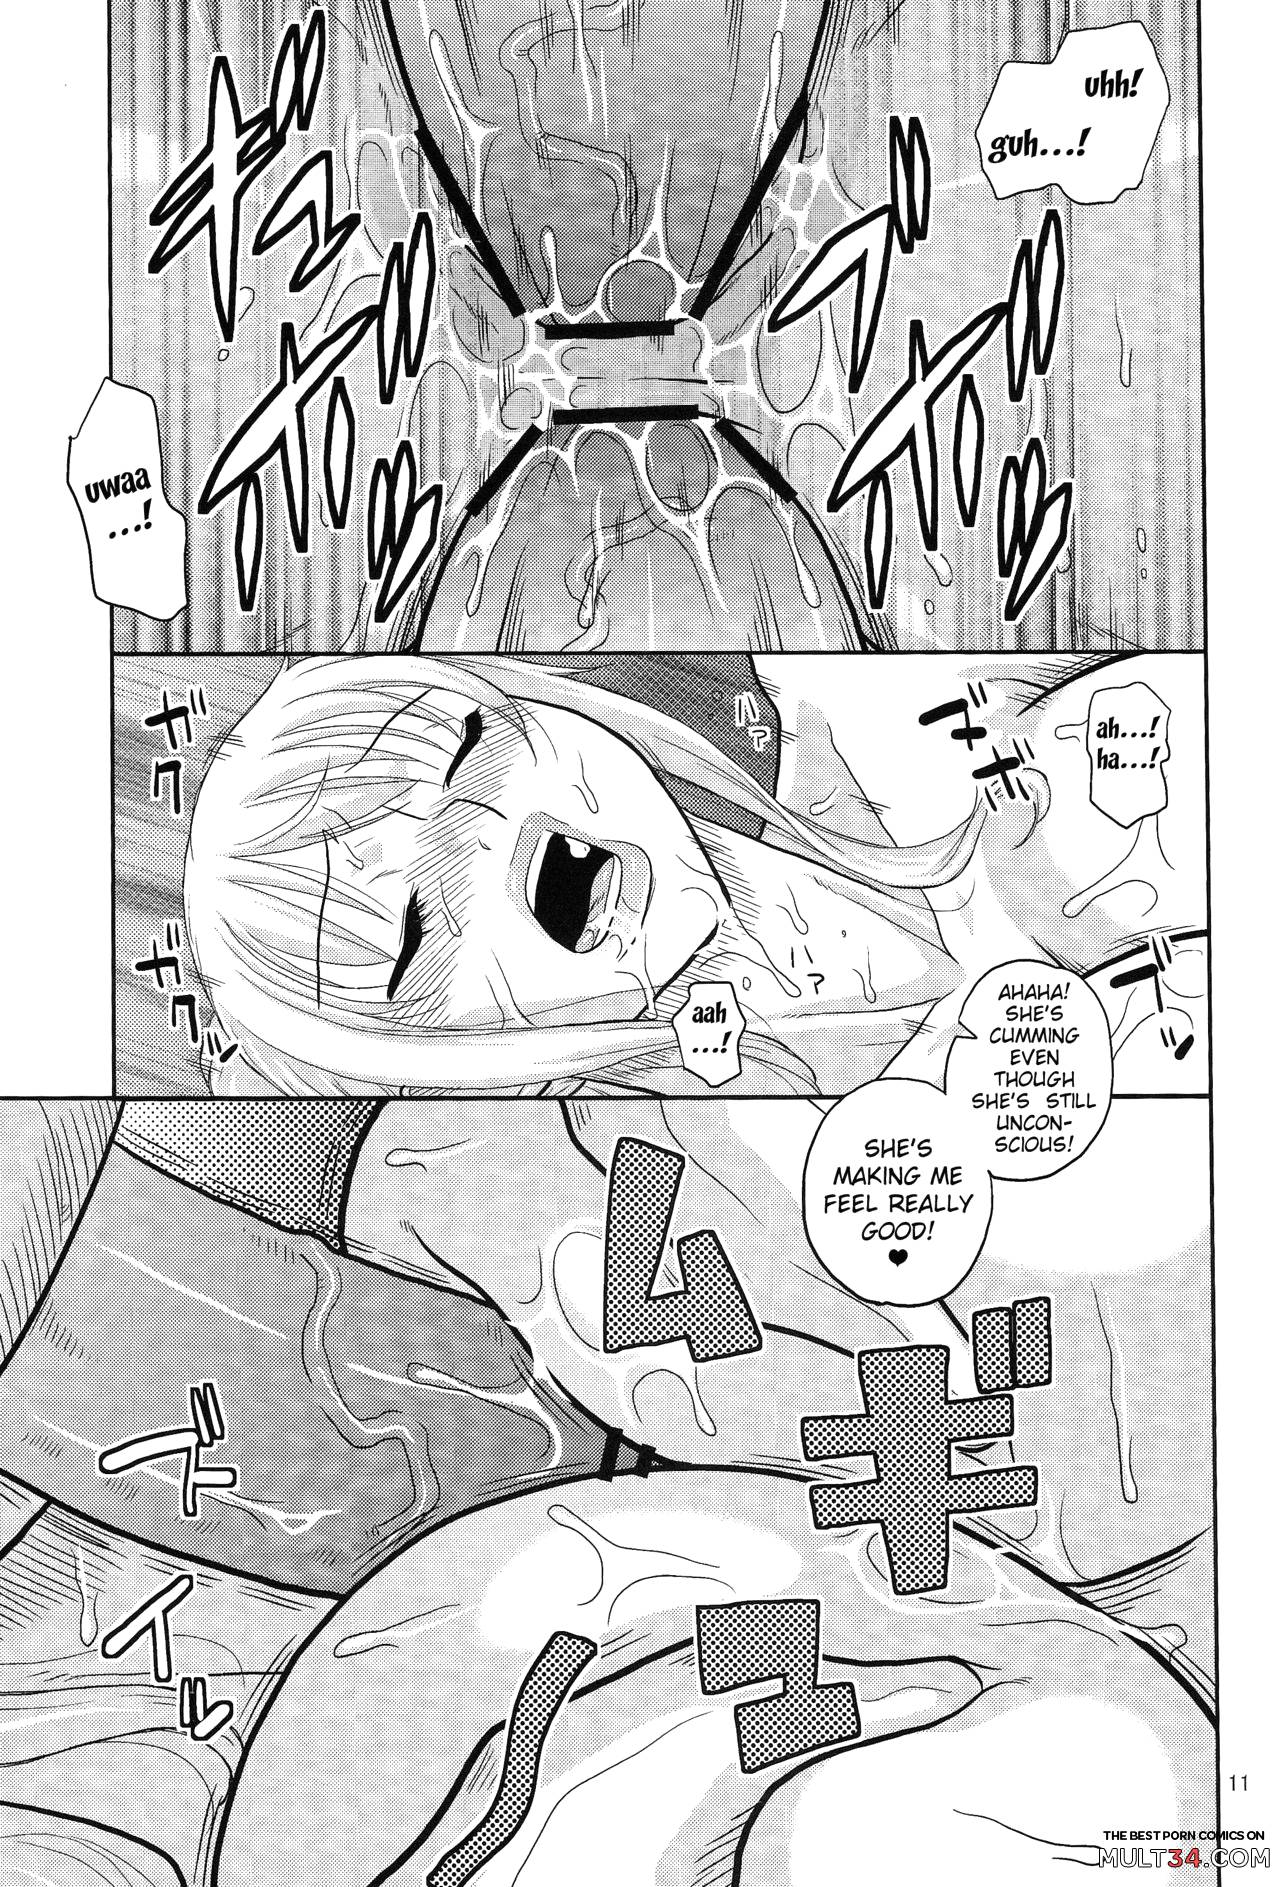 NamiRobi 7 page 10